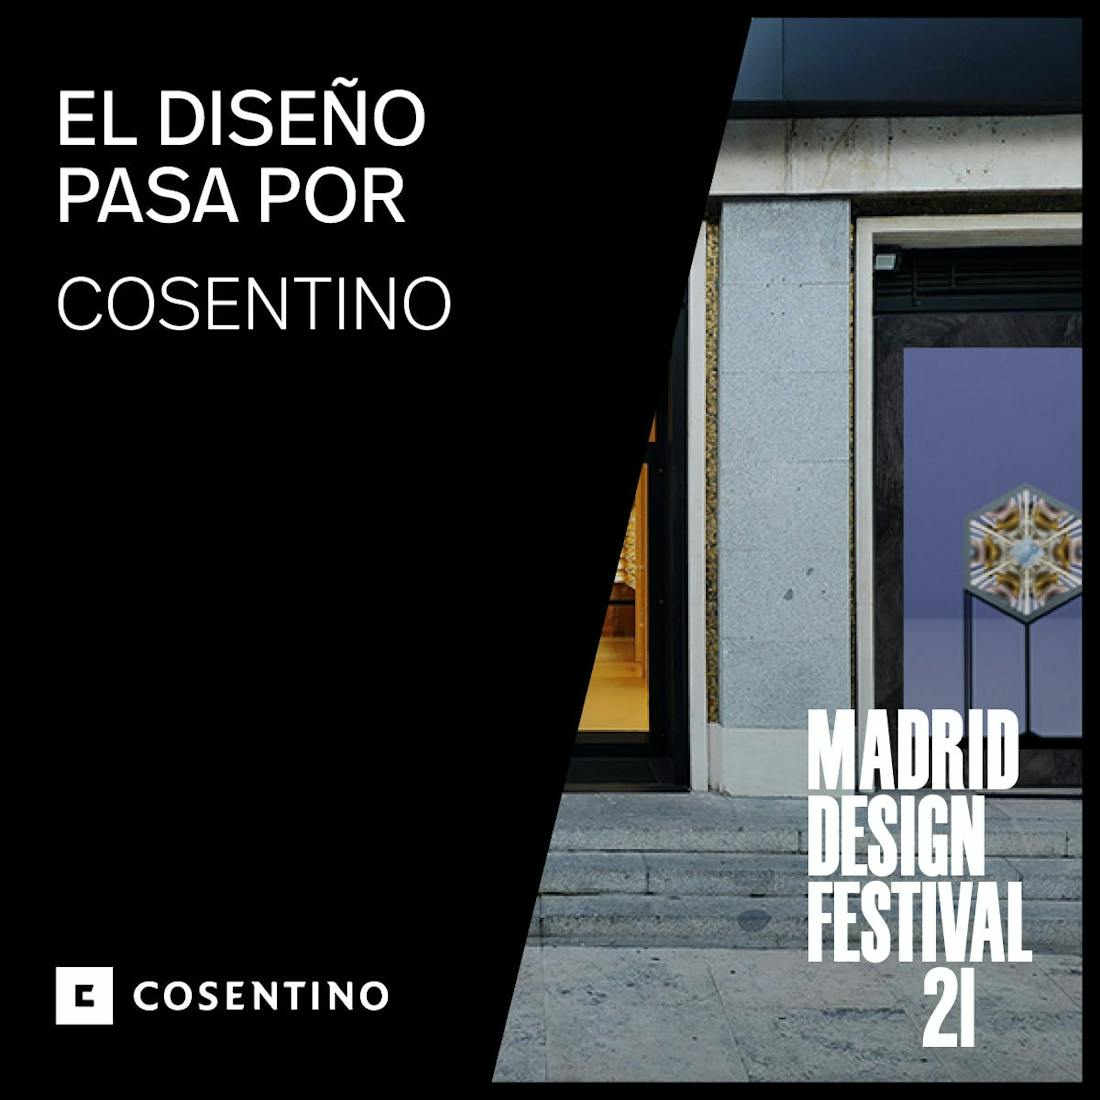 Cosentino at the Madrid Design Festival 2021